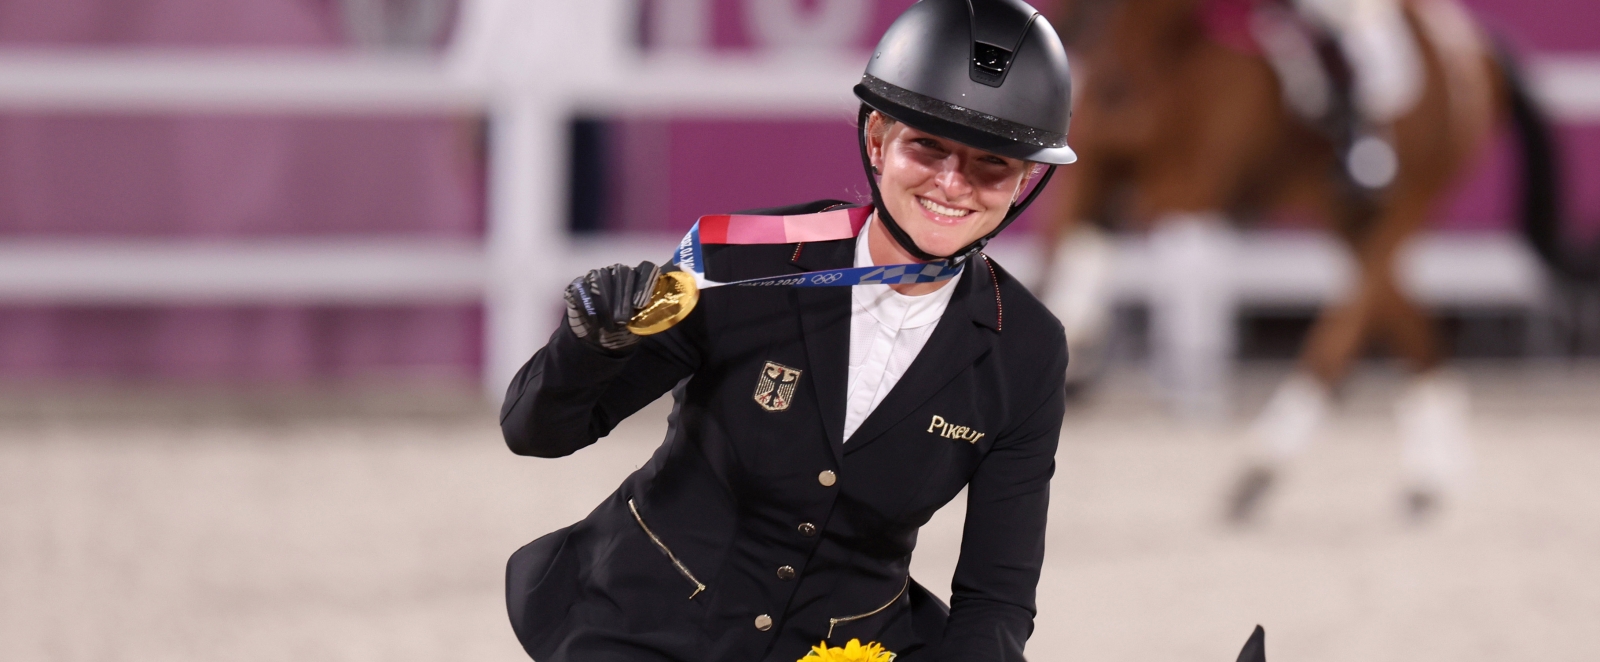 Vielseitigkeitsreiterin Julia Krajewski auf ihrem Pferd mit der Goldmedaille